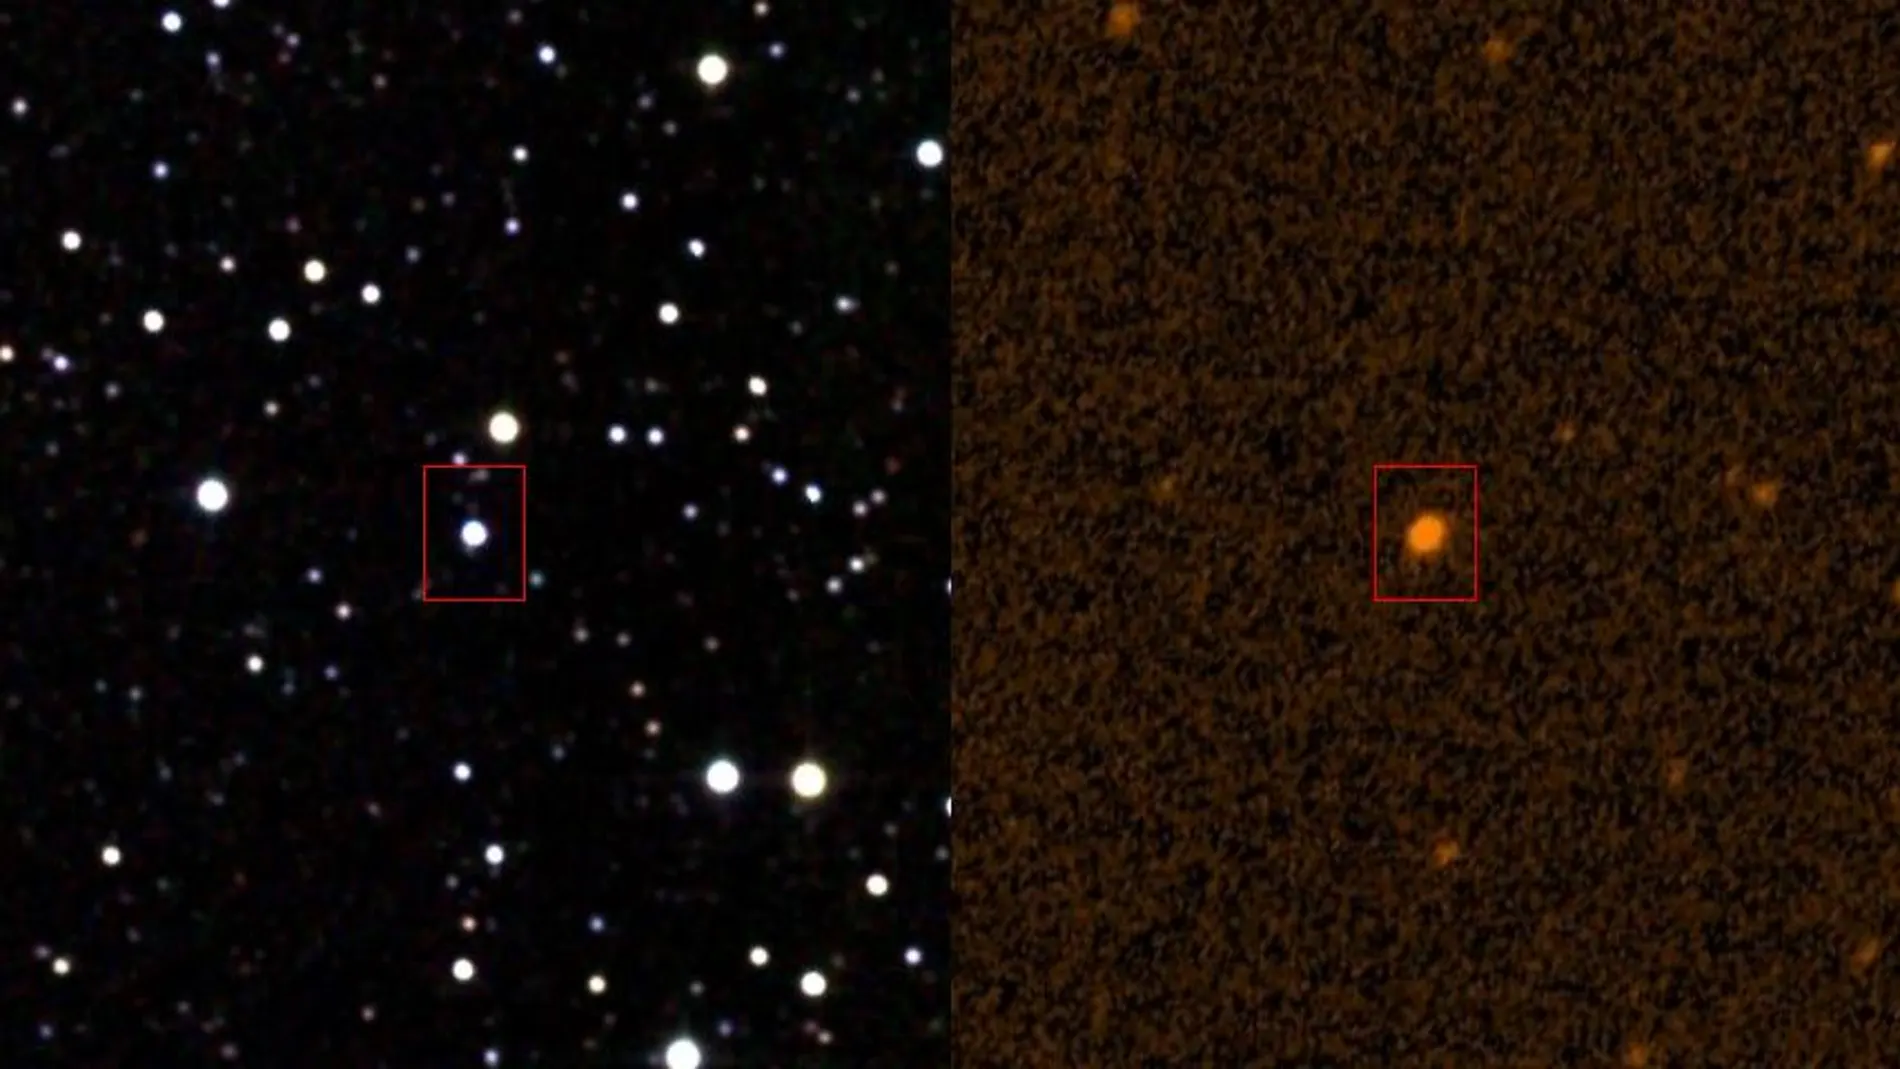 Imagen de KIC 8462852 en infrarrojo y ultravioleta